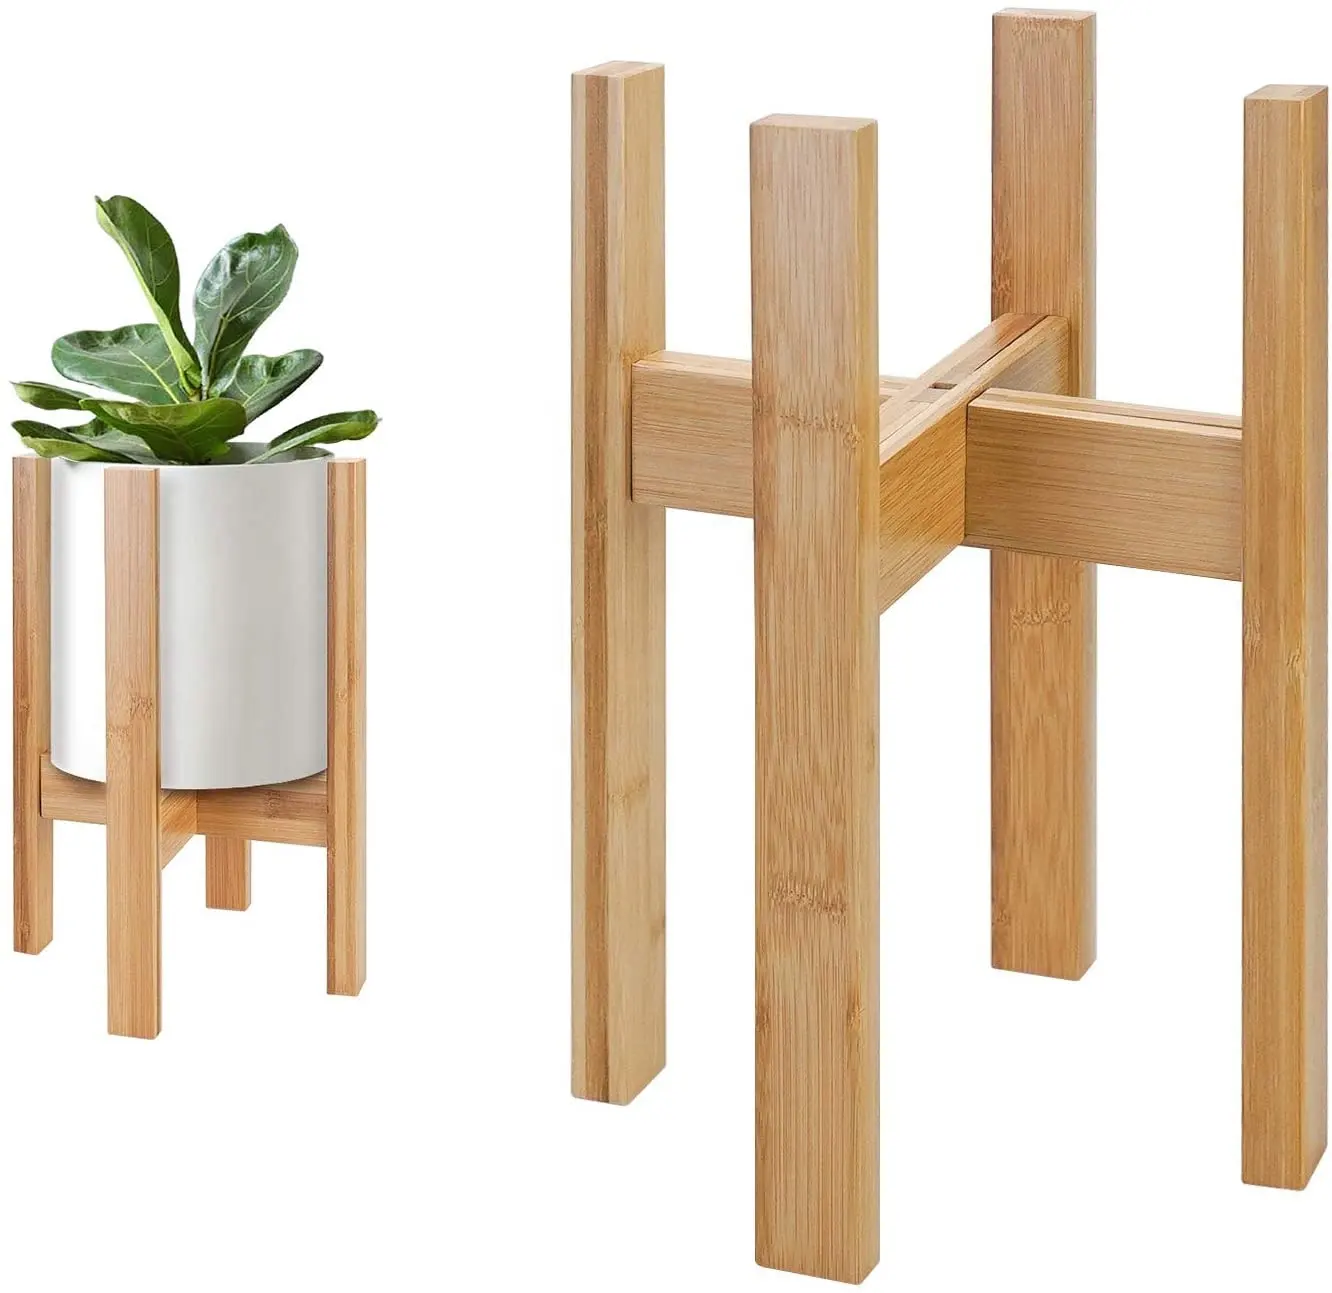 Pot de plantes en bambou de haute qualité, support réglable de présentation, en bois, pour l'intérieur et l'extérieur, organiseur pour balcon, pièces